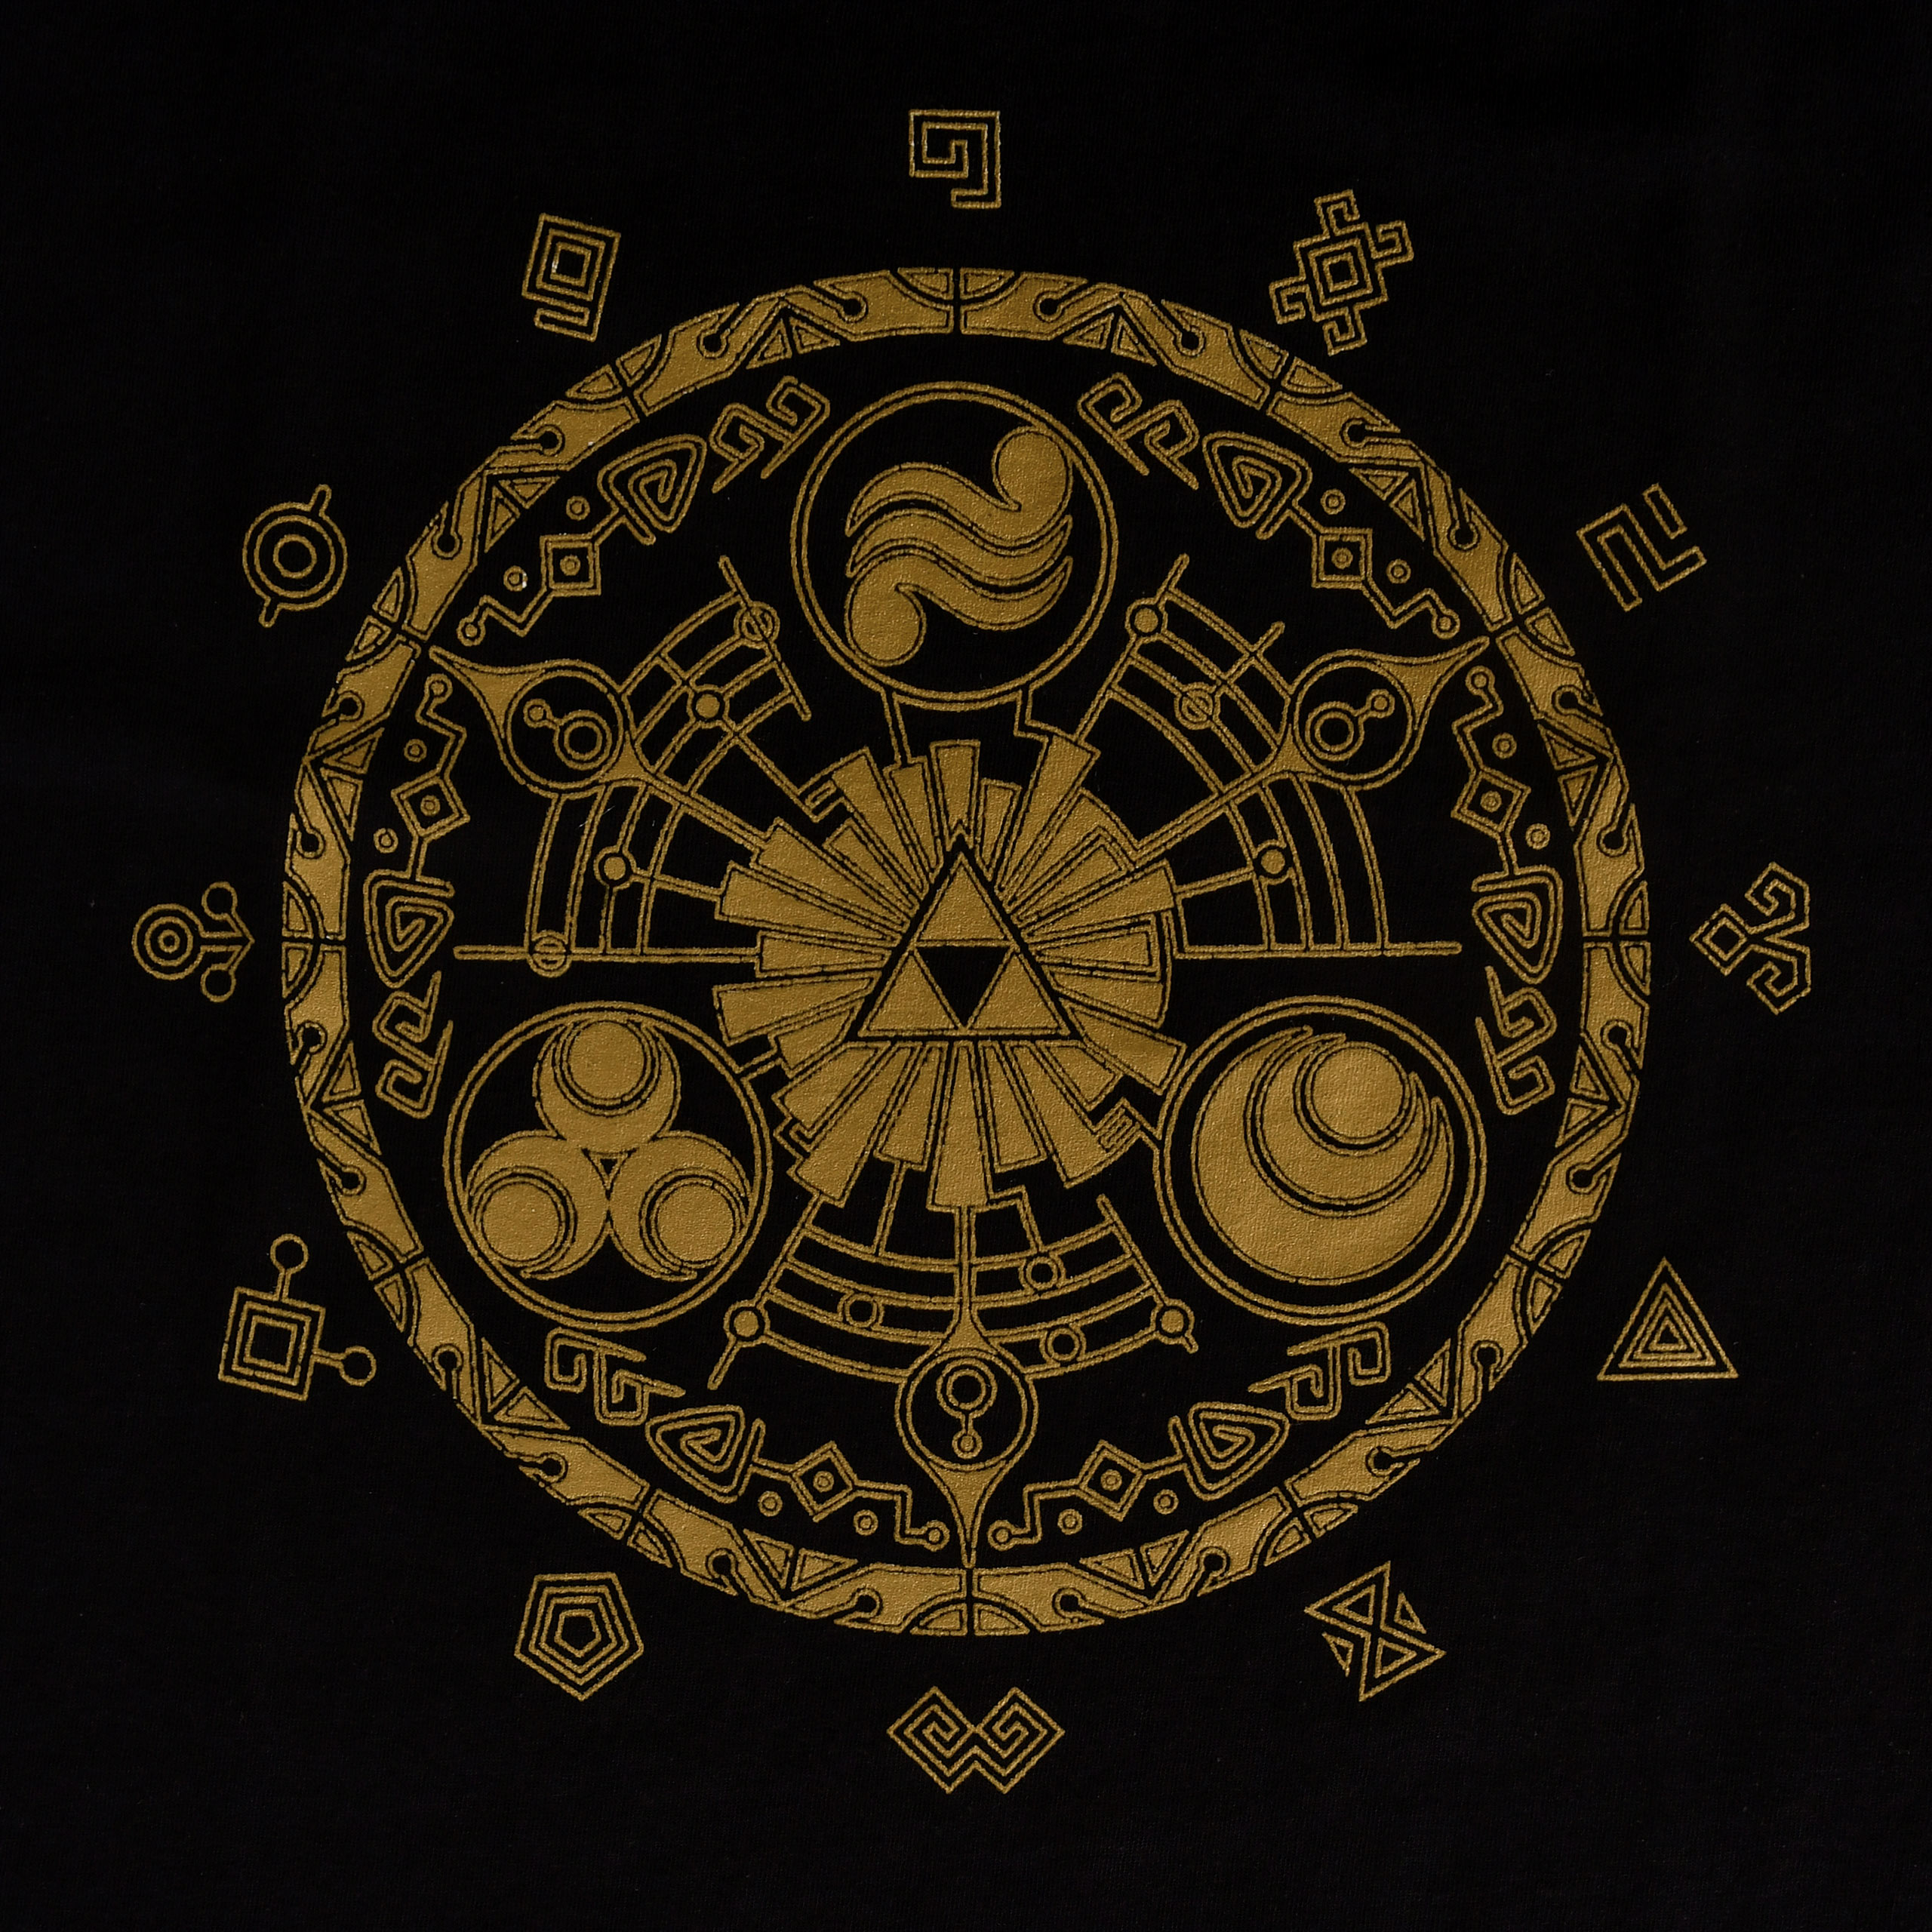 Zelda - Gate of Time T-Shirt black